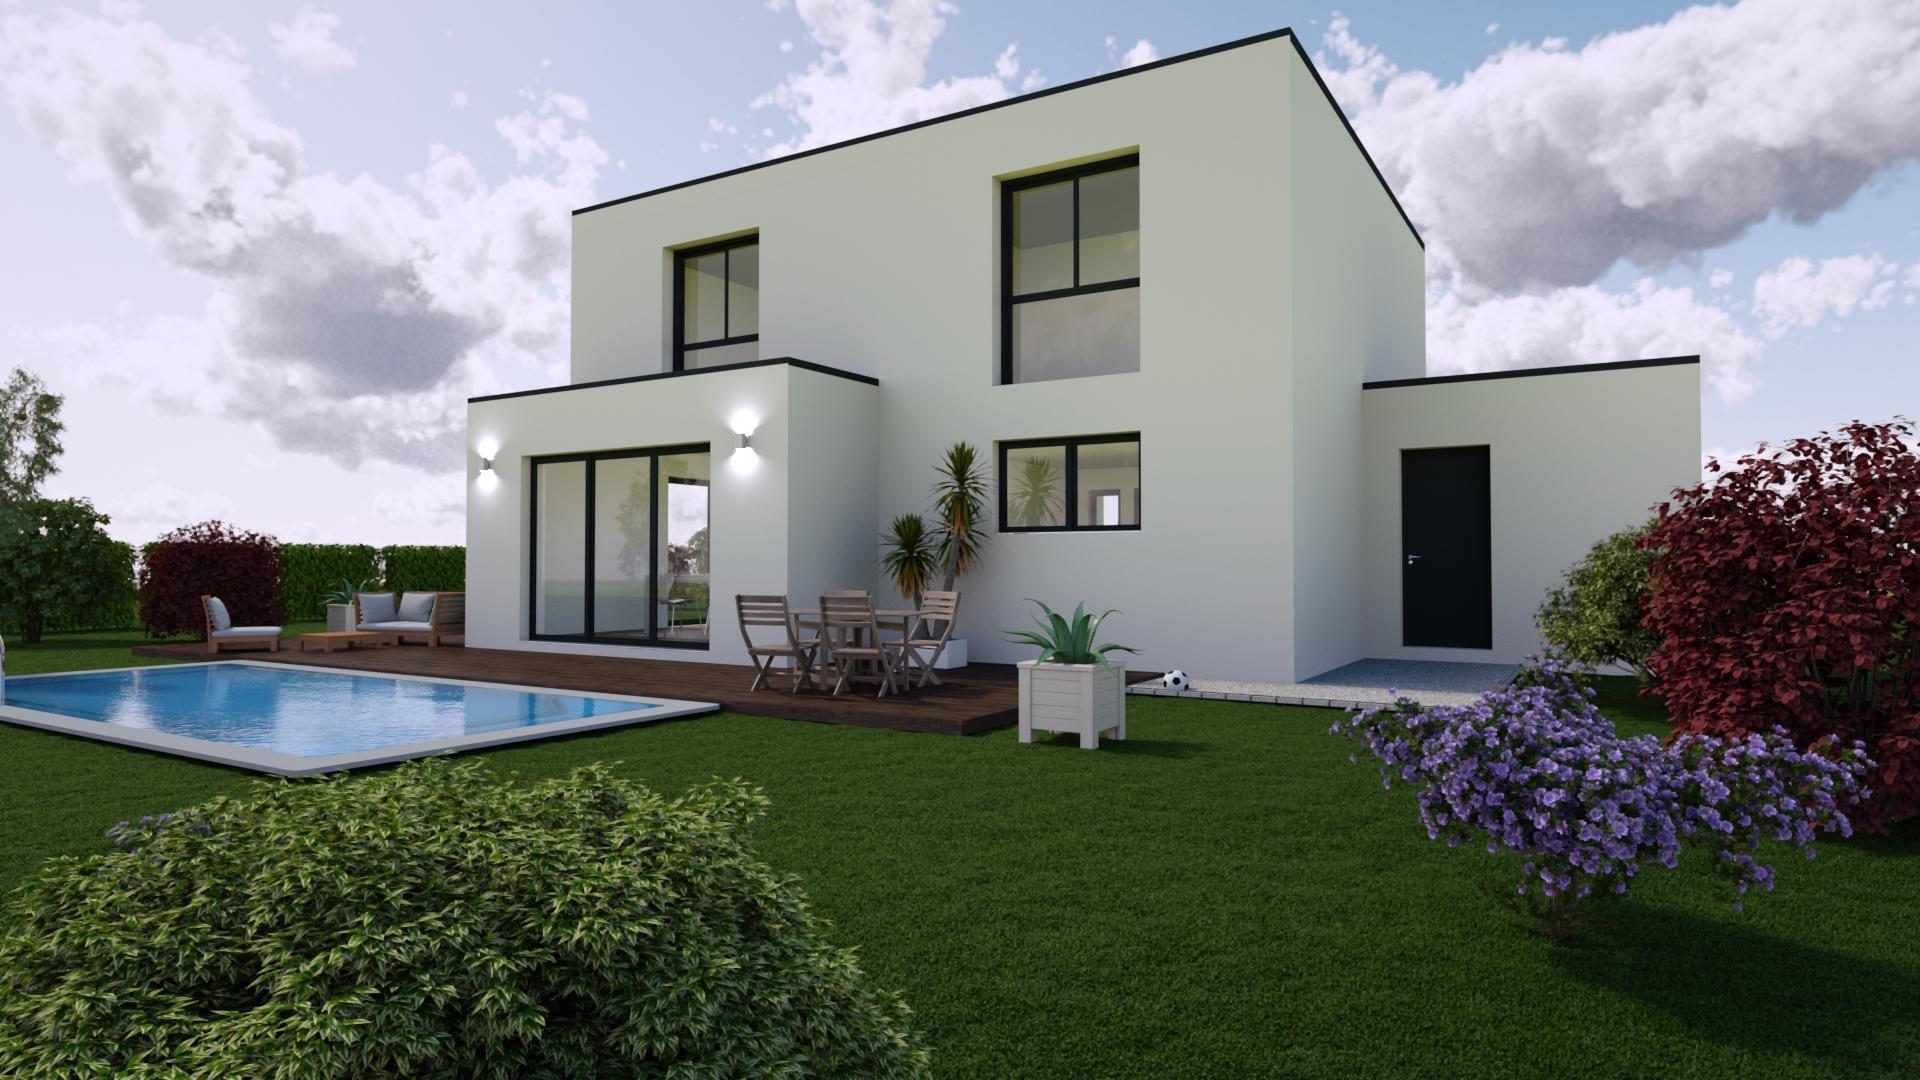 Maison neuve Loire Atlantique 161 000€ contemporaine - vue arriere - MF-Construction